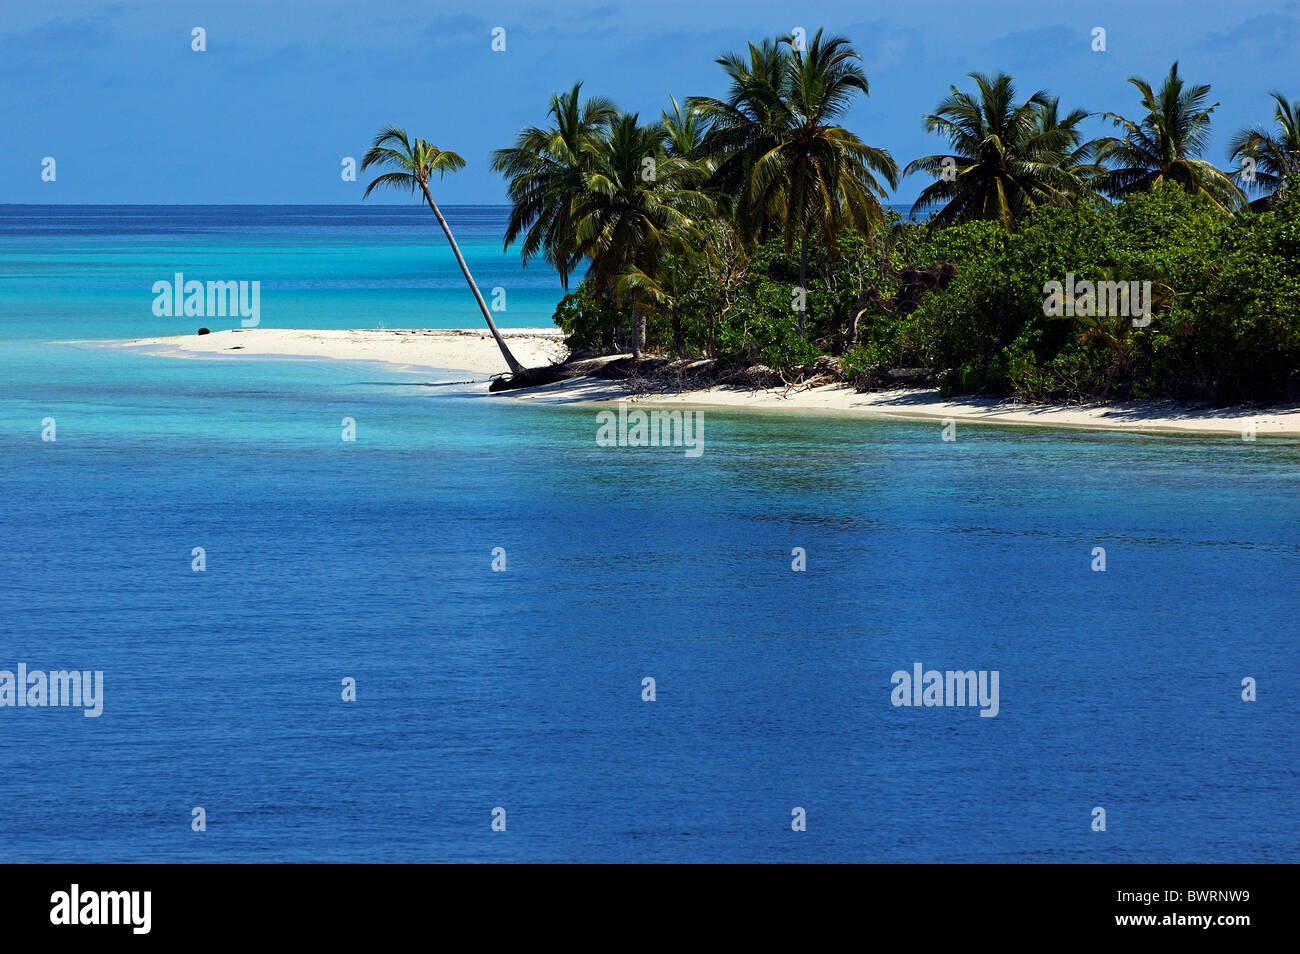 Spiaggia, Maldive - idilliaco fiancheggiata da palme spiaggia di sabbia bianca circondata da blue acque tropicali Foto Stock